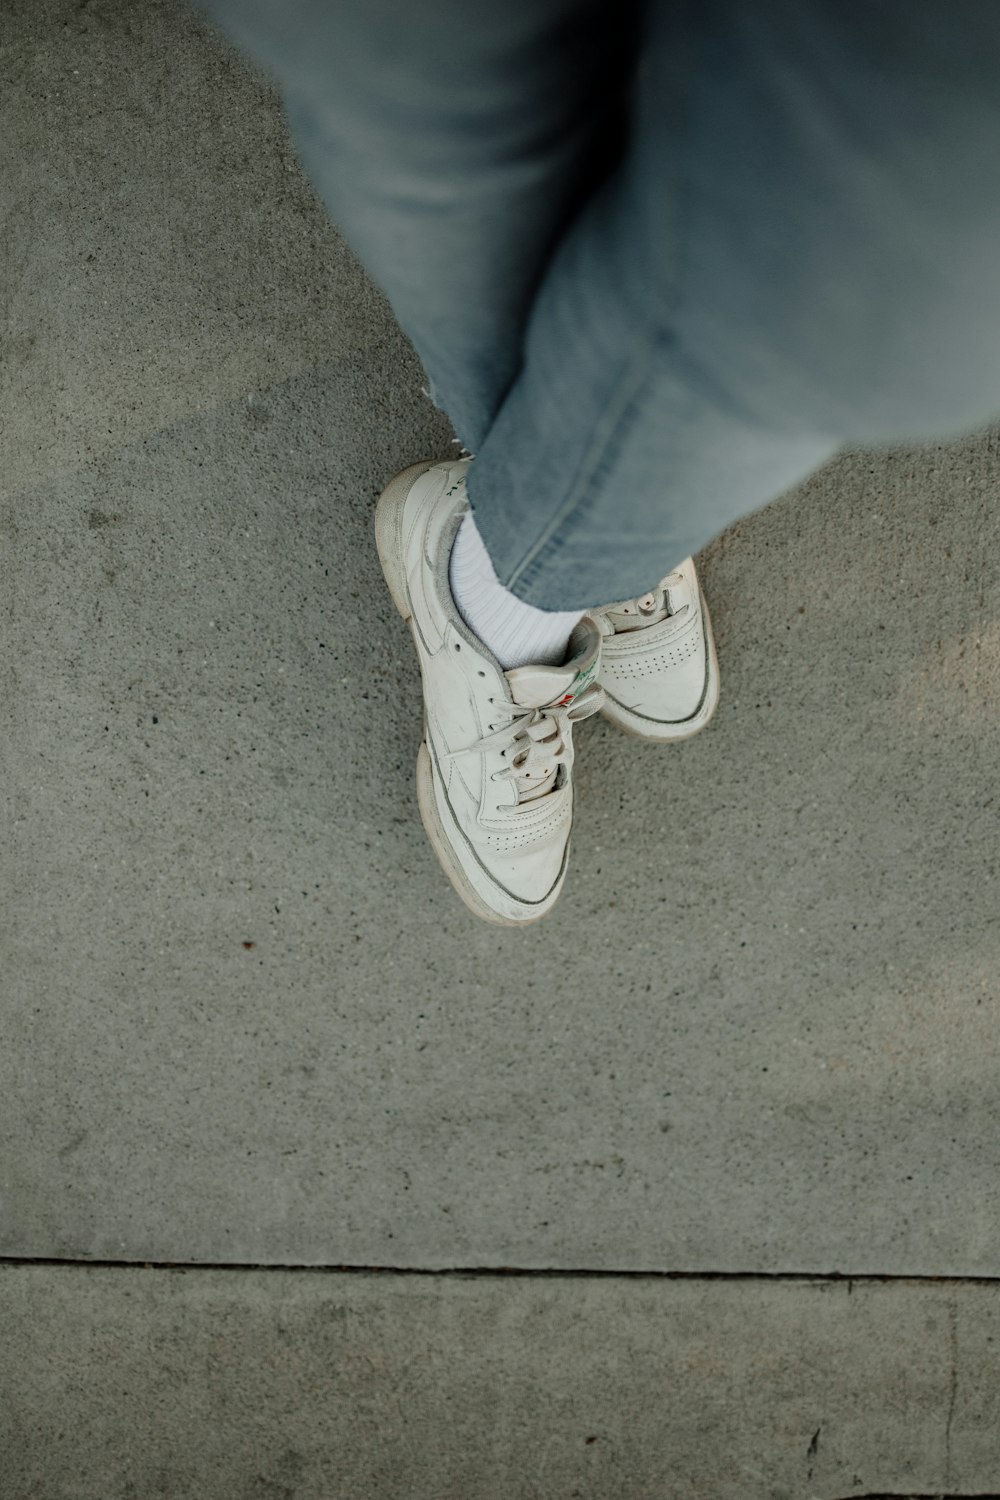 une personne debout sur un trottoir portant des chaussures blanches